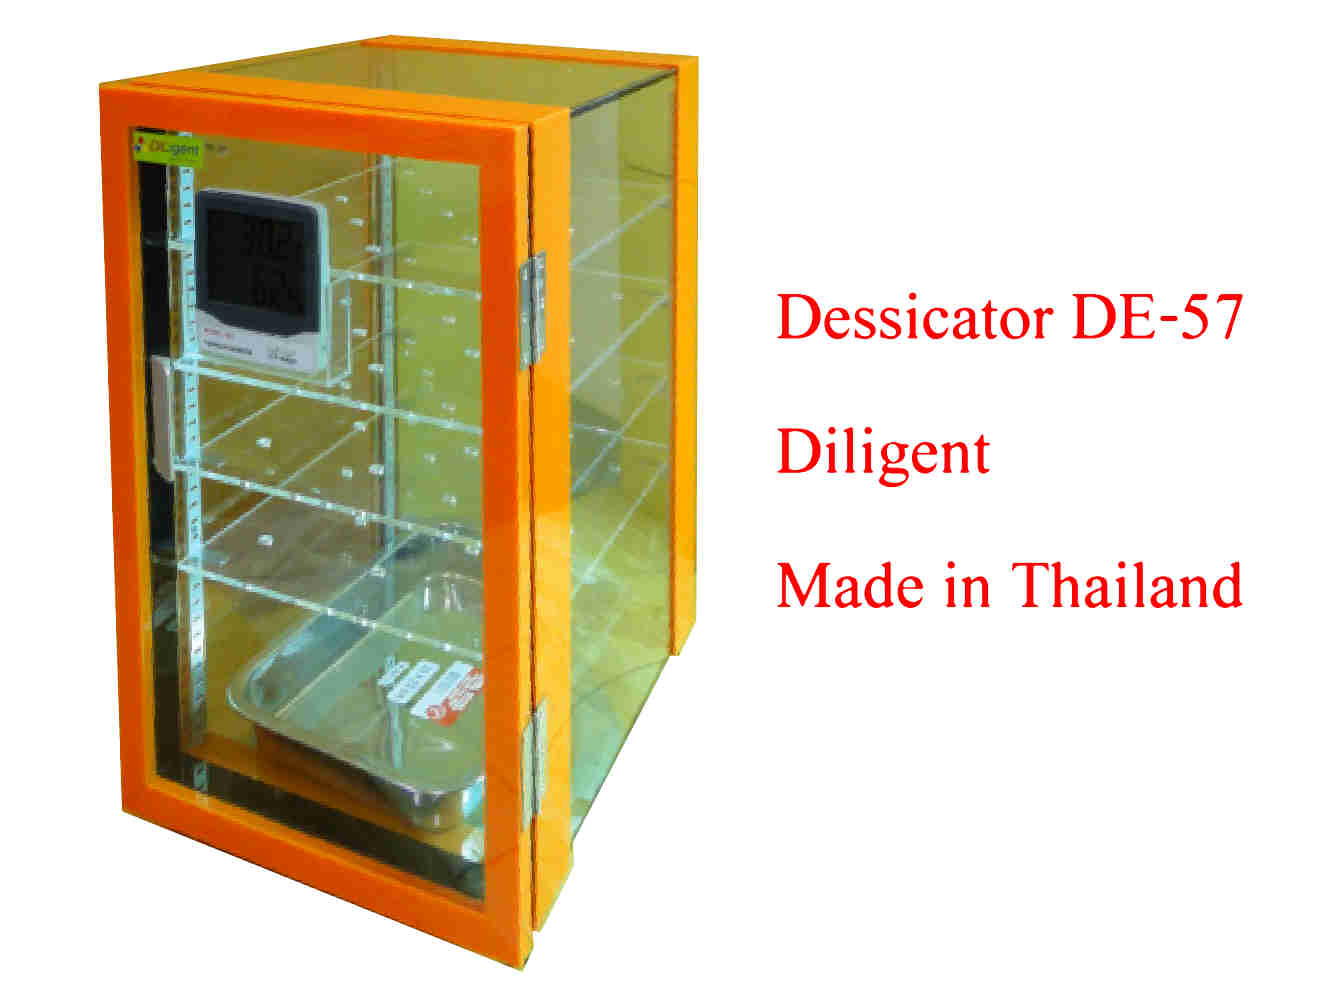 ตู้ดูดความชื้น Desiccator Cabinet แบบใช้ Silica gel Model DE-57 ทำจากพลาสติก 2